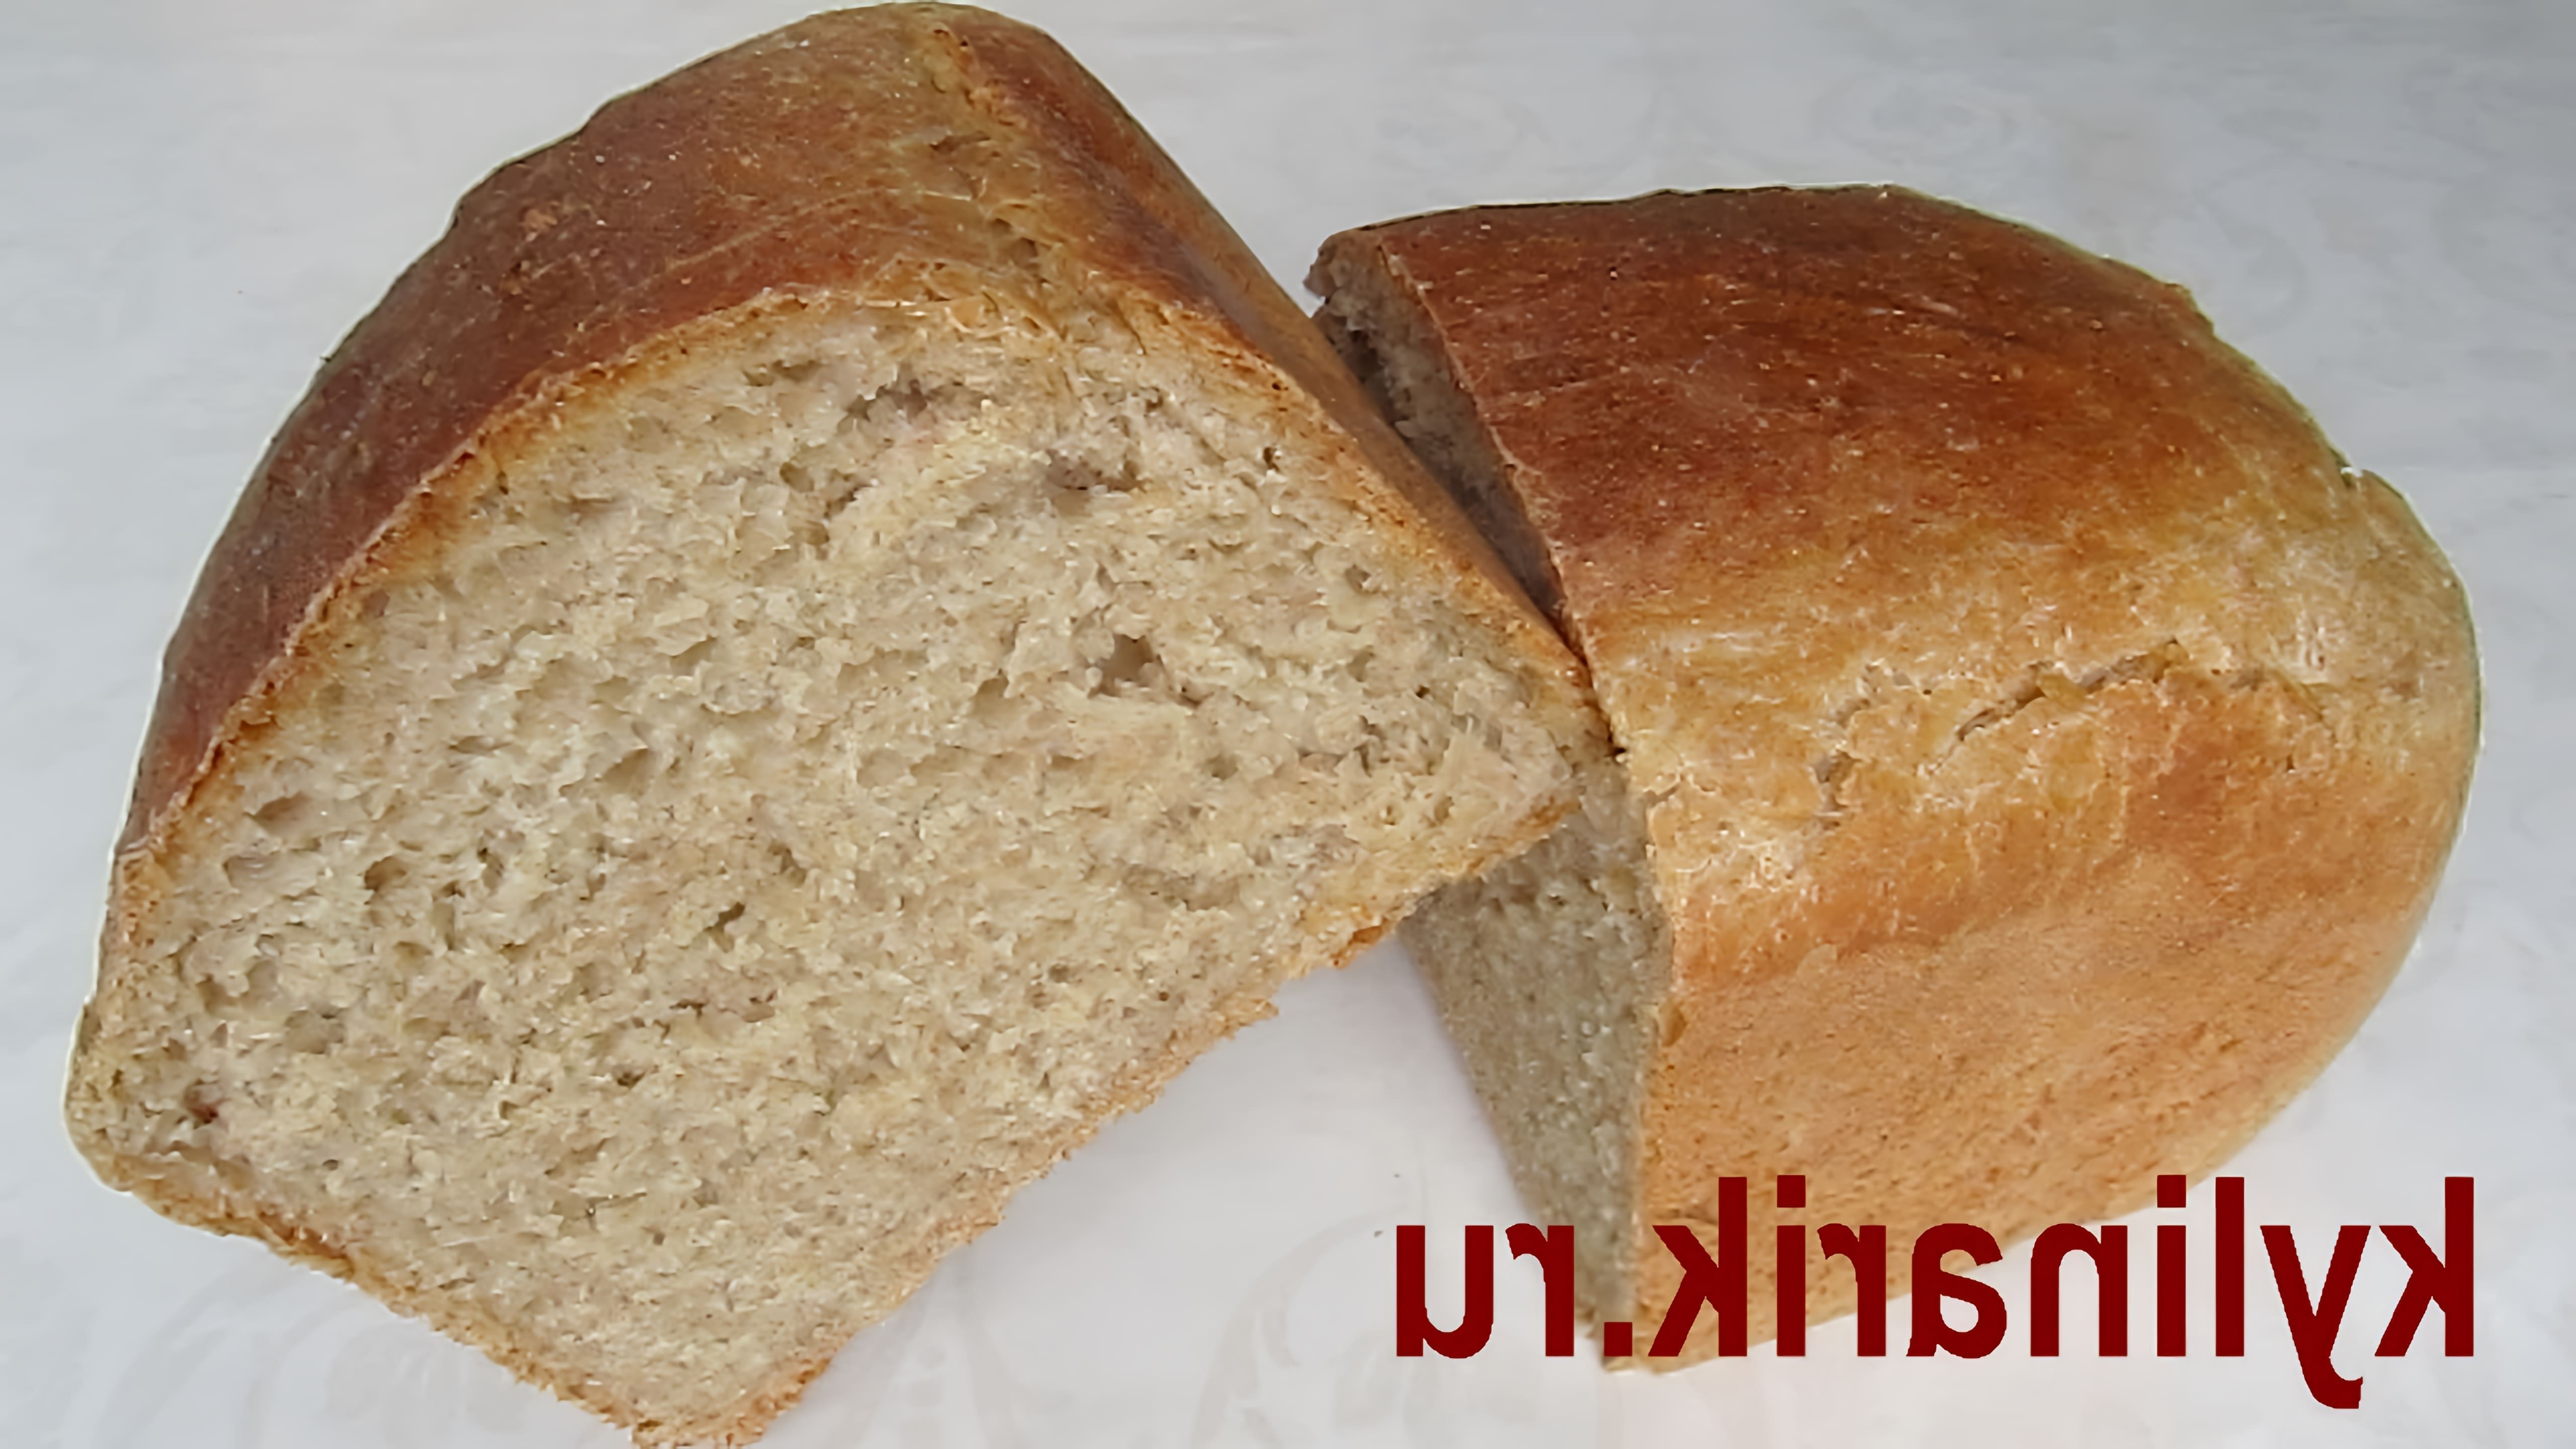 В этом видео демонстрируется процесс приготовления хлеба из цельнозерновой пшеничной муки